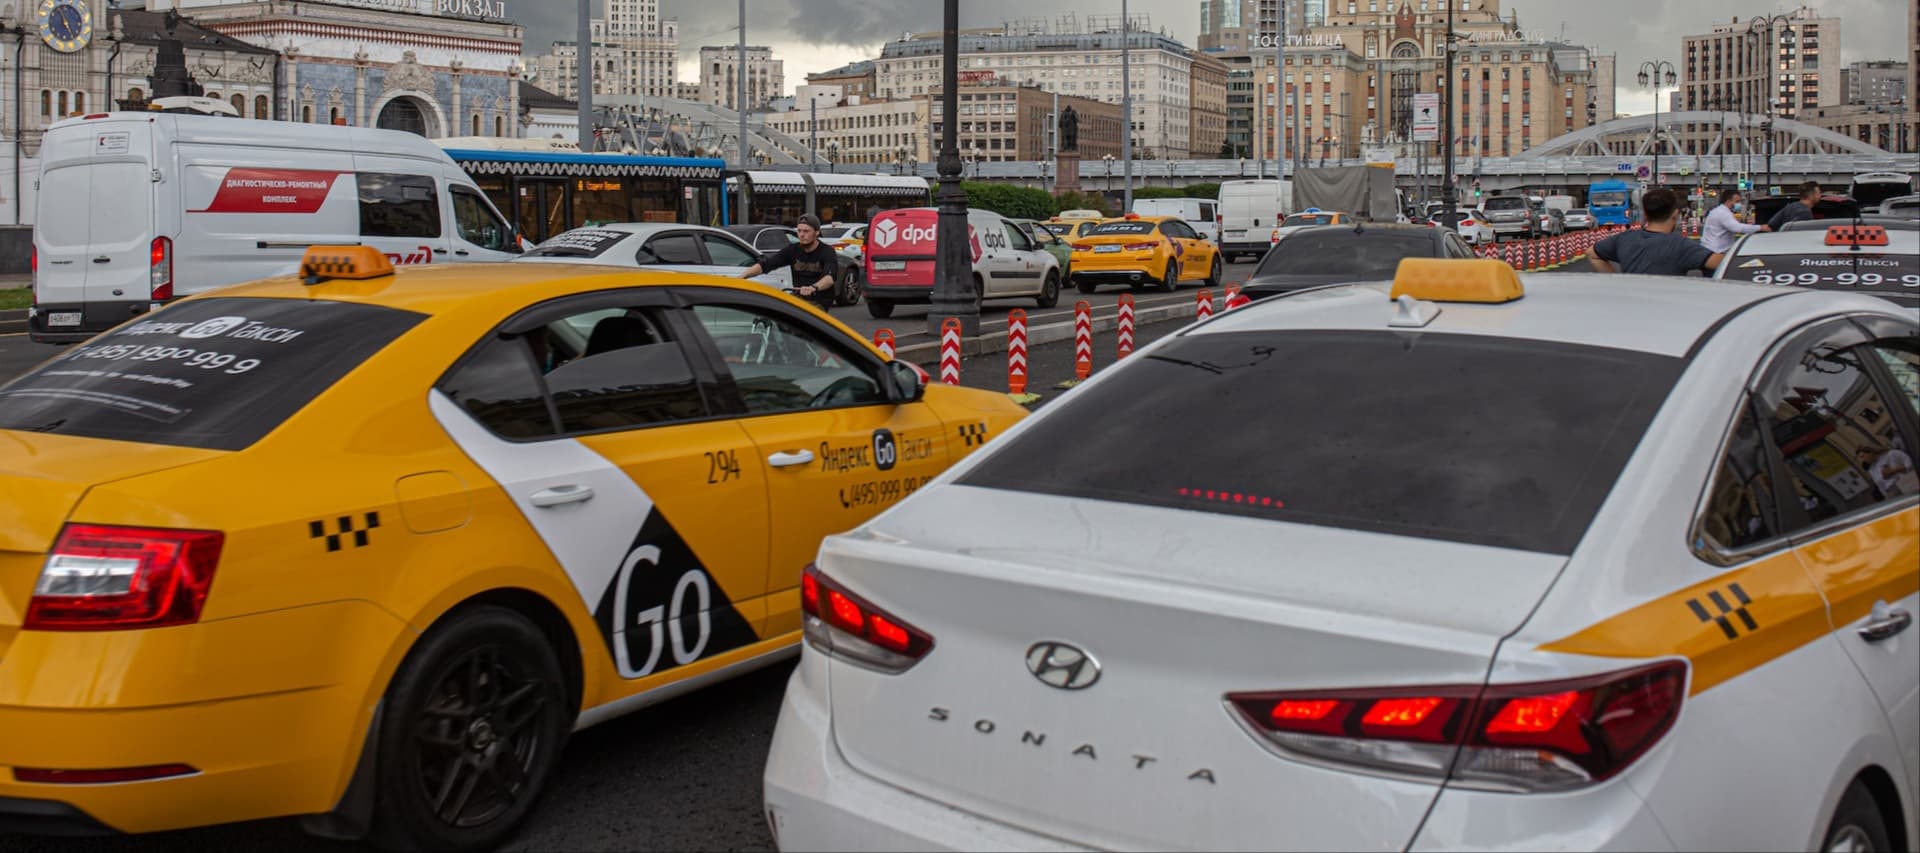 Фото новости: "Такси в Москве подорожало на 15% из-за нехватки водителей и проблем с навигацией"